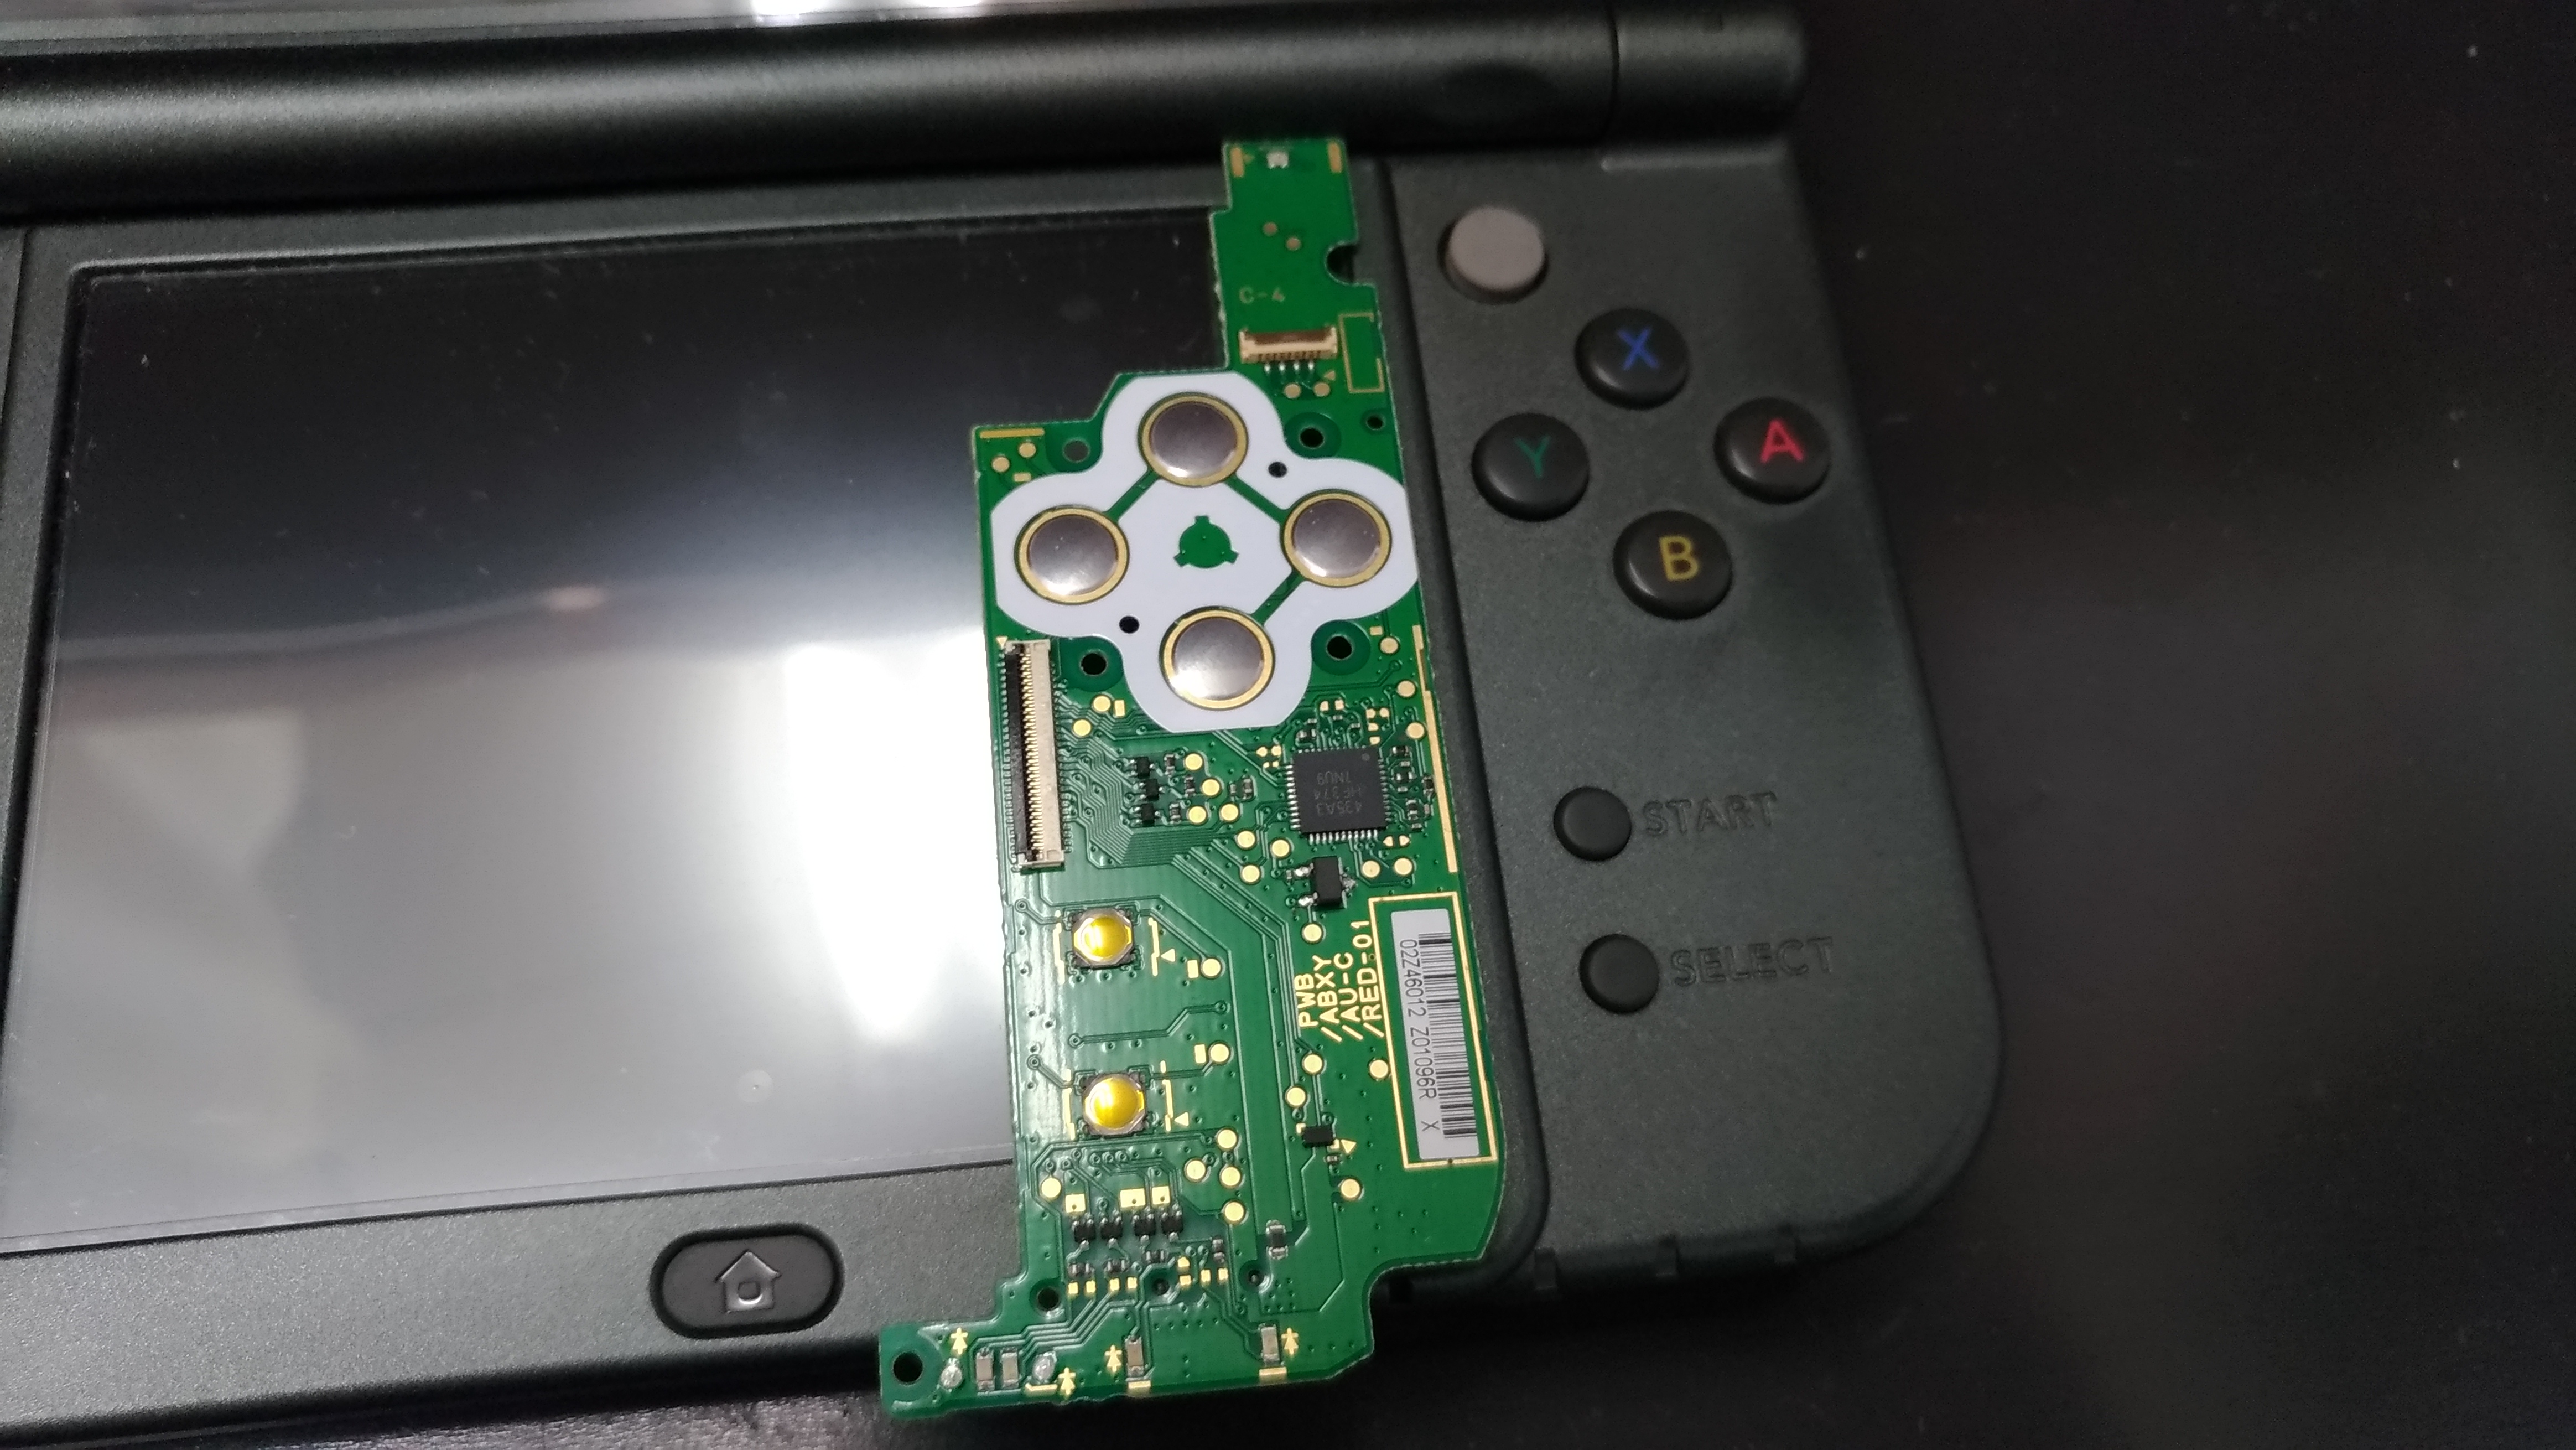 Bボタンが使えないnew 3ds Ll ボタンボード交換で修理できます Switch Nintendo3ds Psp 修理のゲームホスピタル Switch Nintendo3ds ニンテンドーds Psp 修理